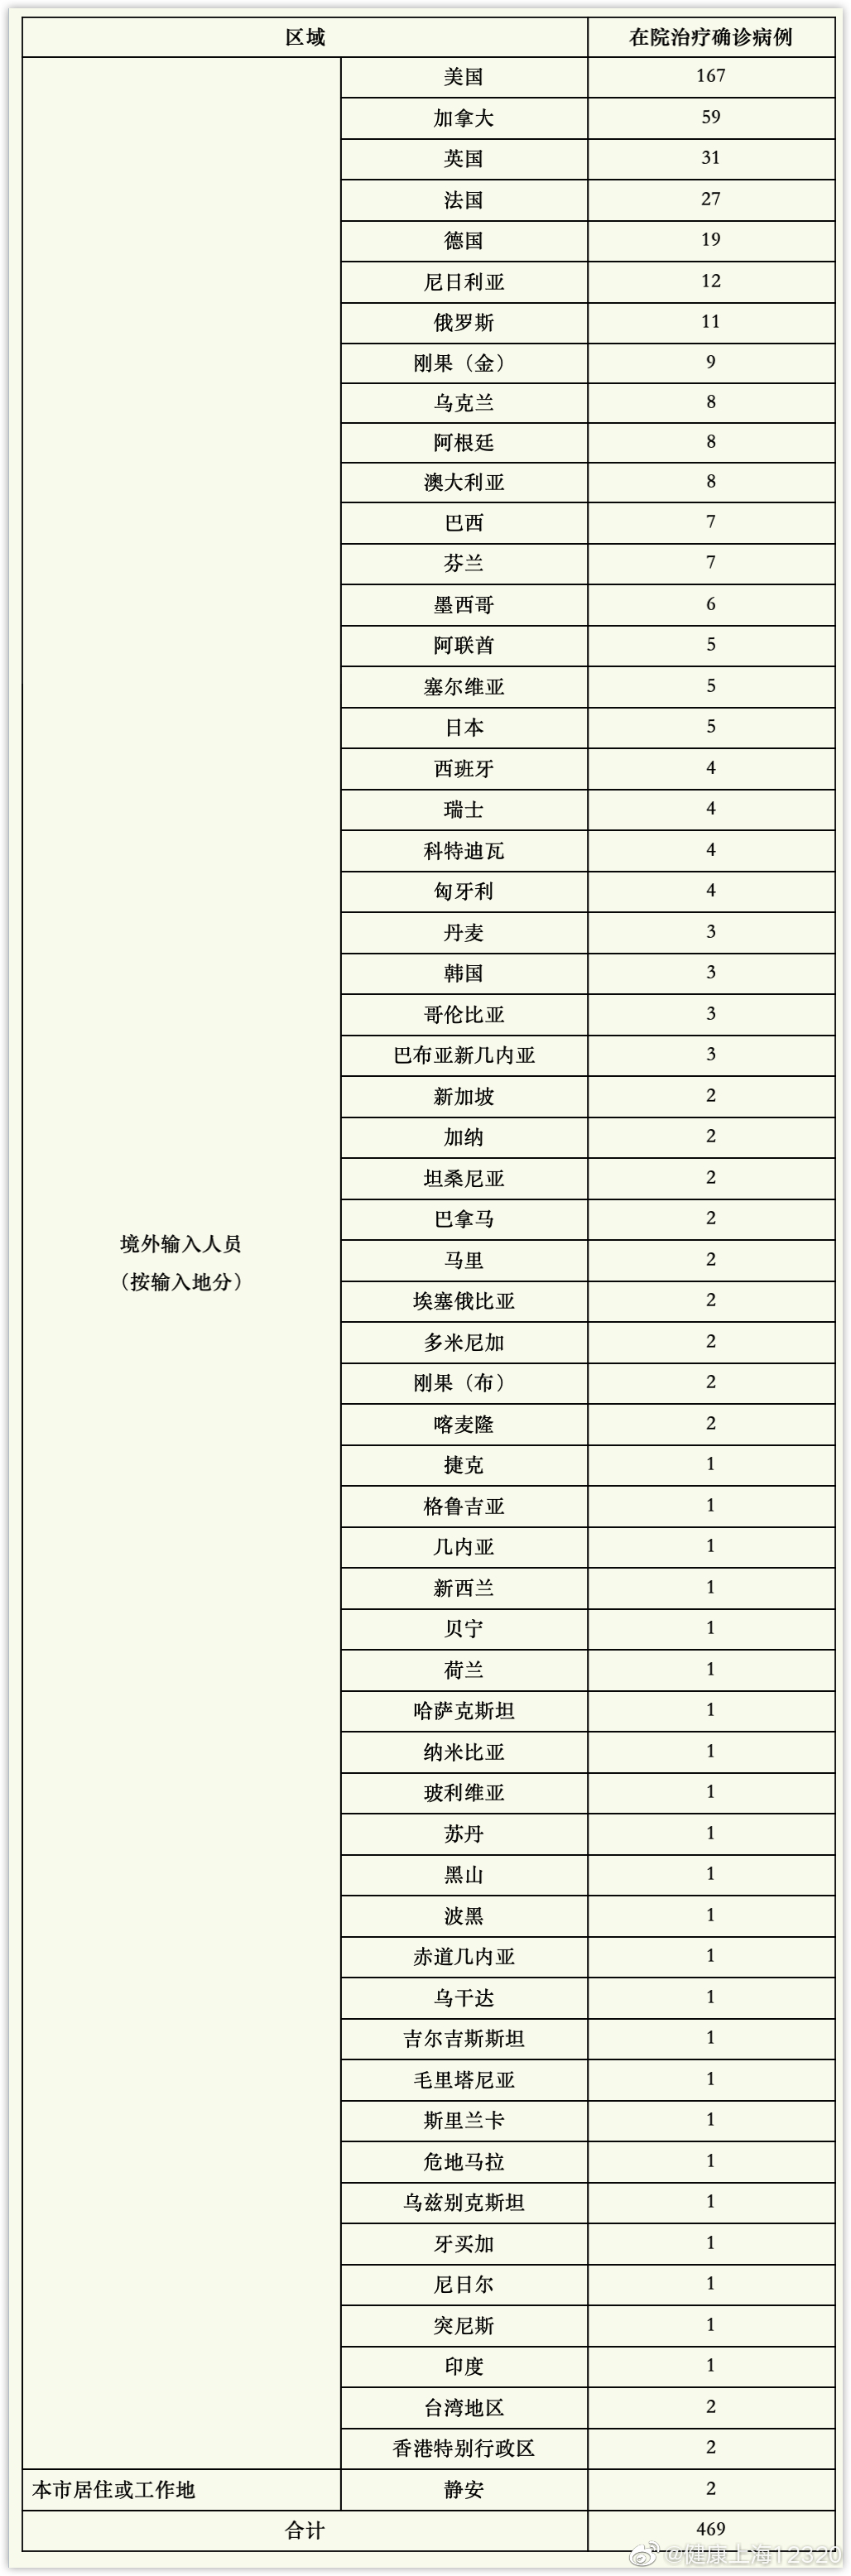 上海1月18日无新增本土确诊病例 新增境外输入15例